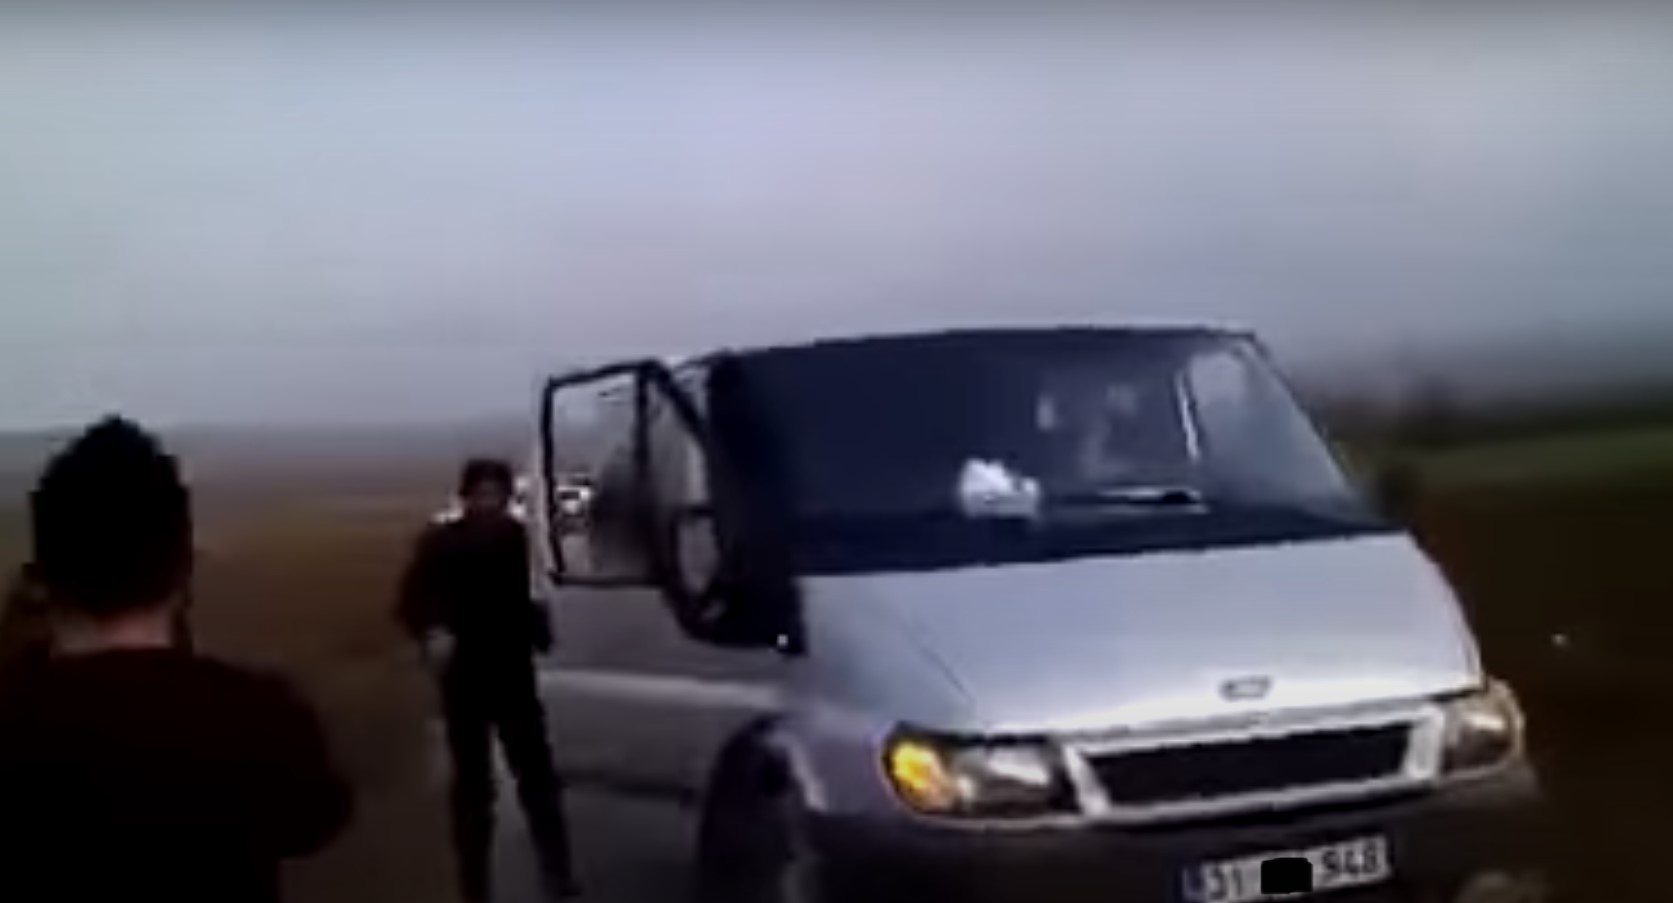 azerbaycan iddia videosu araba plaka